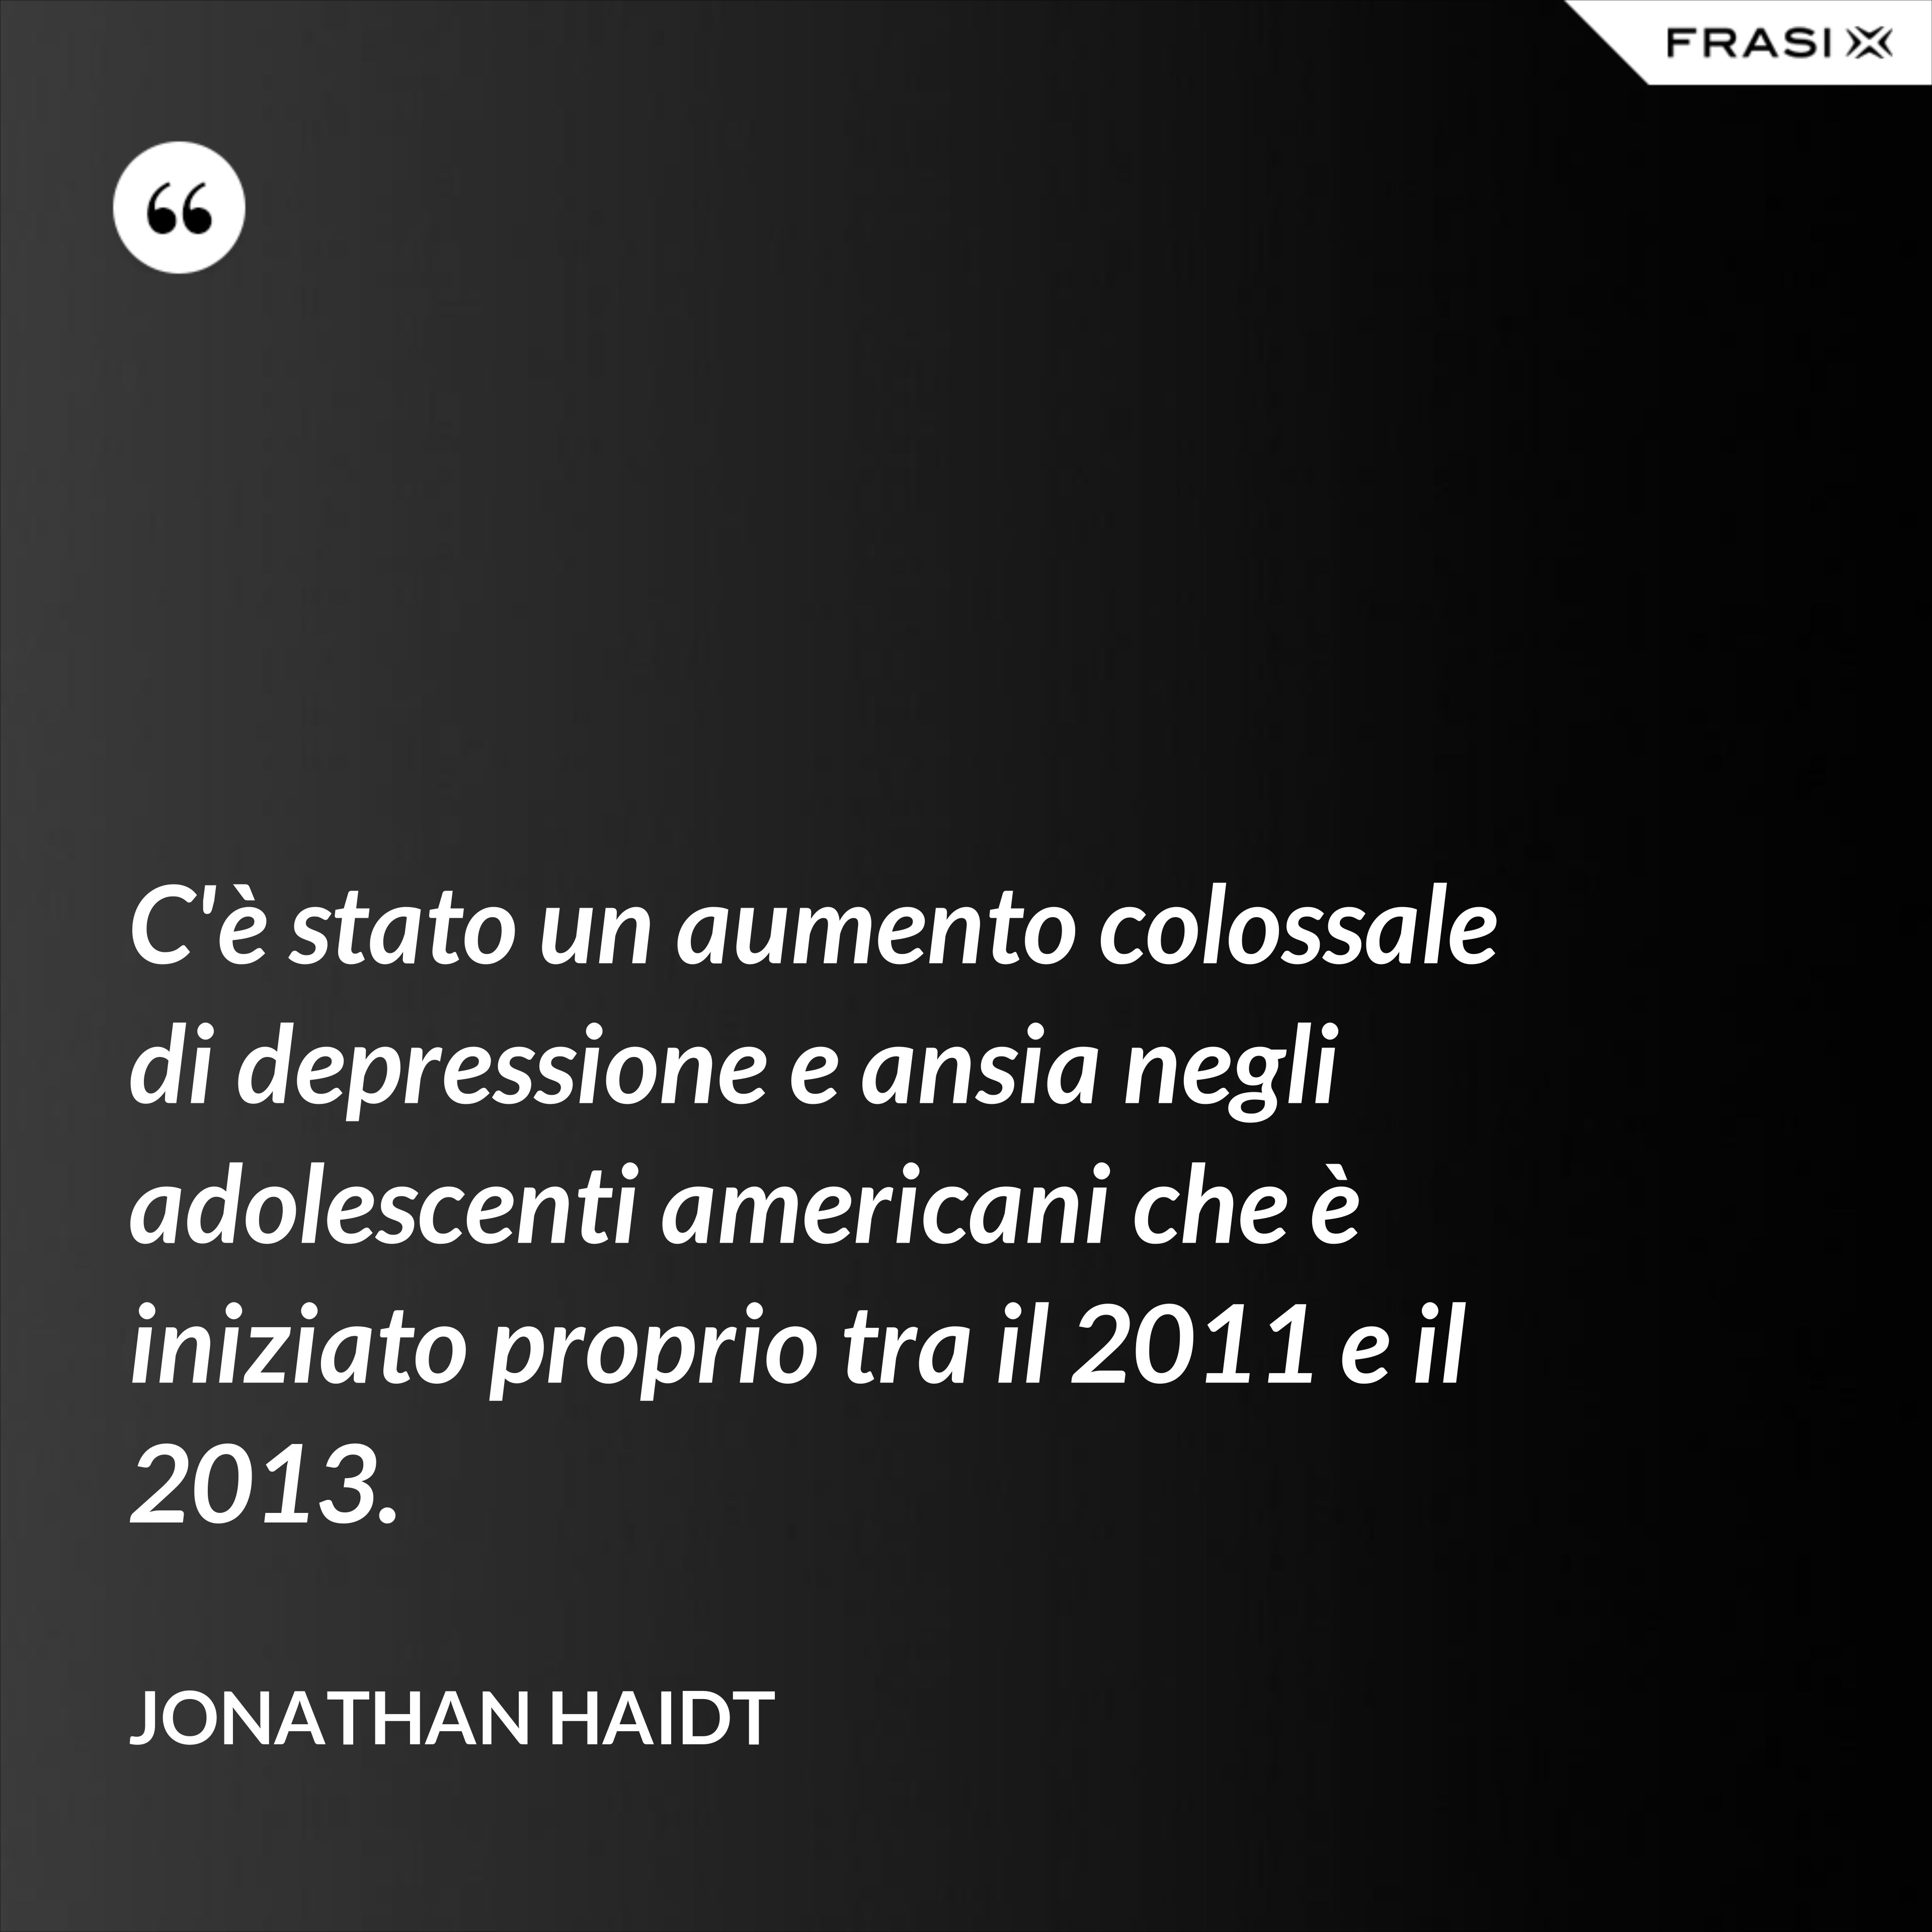 C'è stato un aumento colossale di depressione e ansia negli adolescenti americani che è iniziato proprio tra il 2011 e il 2013. - Jonathan Haidt